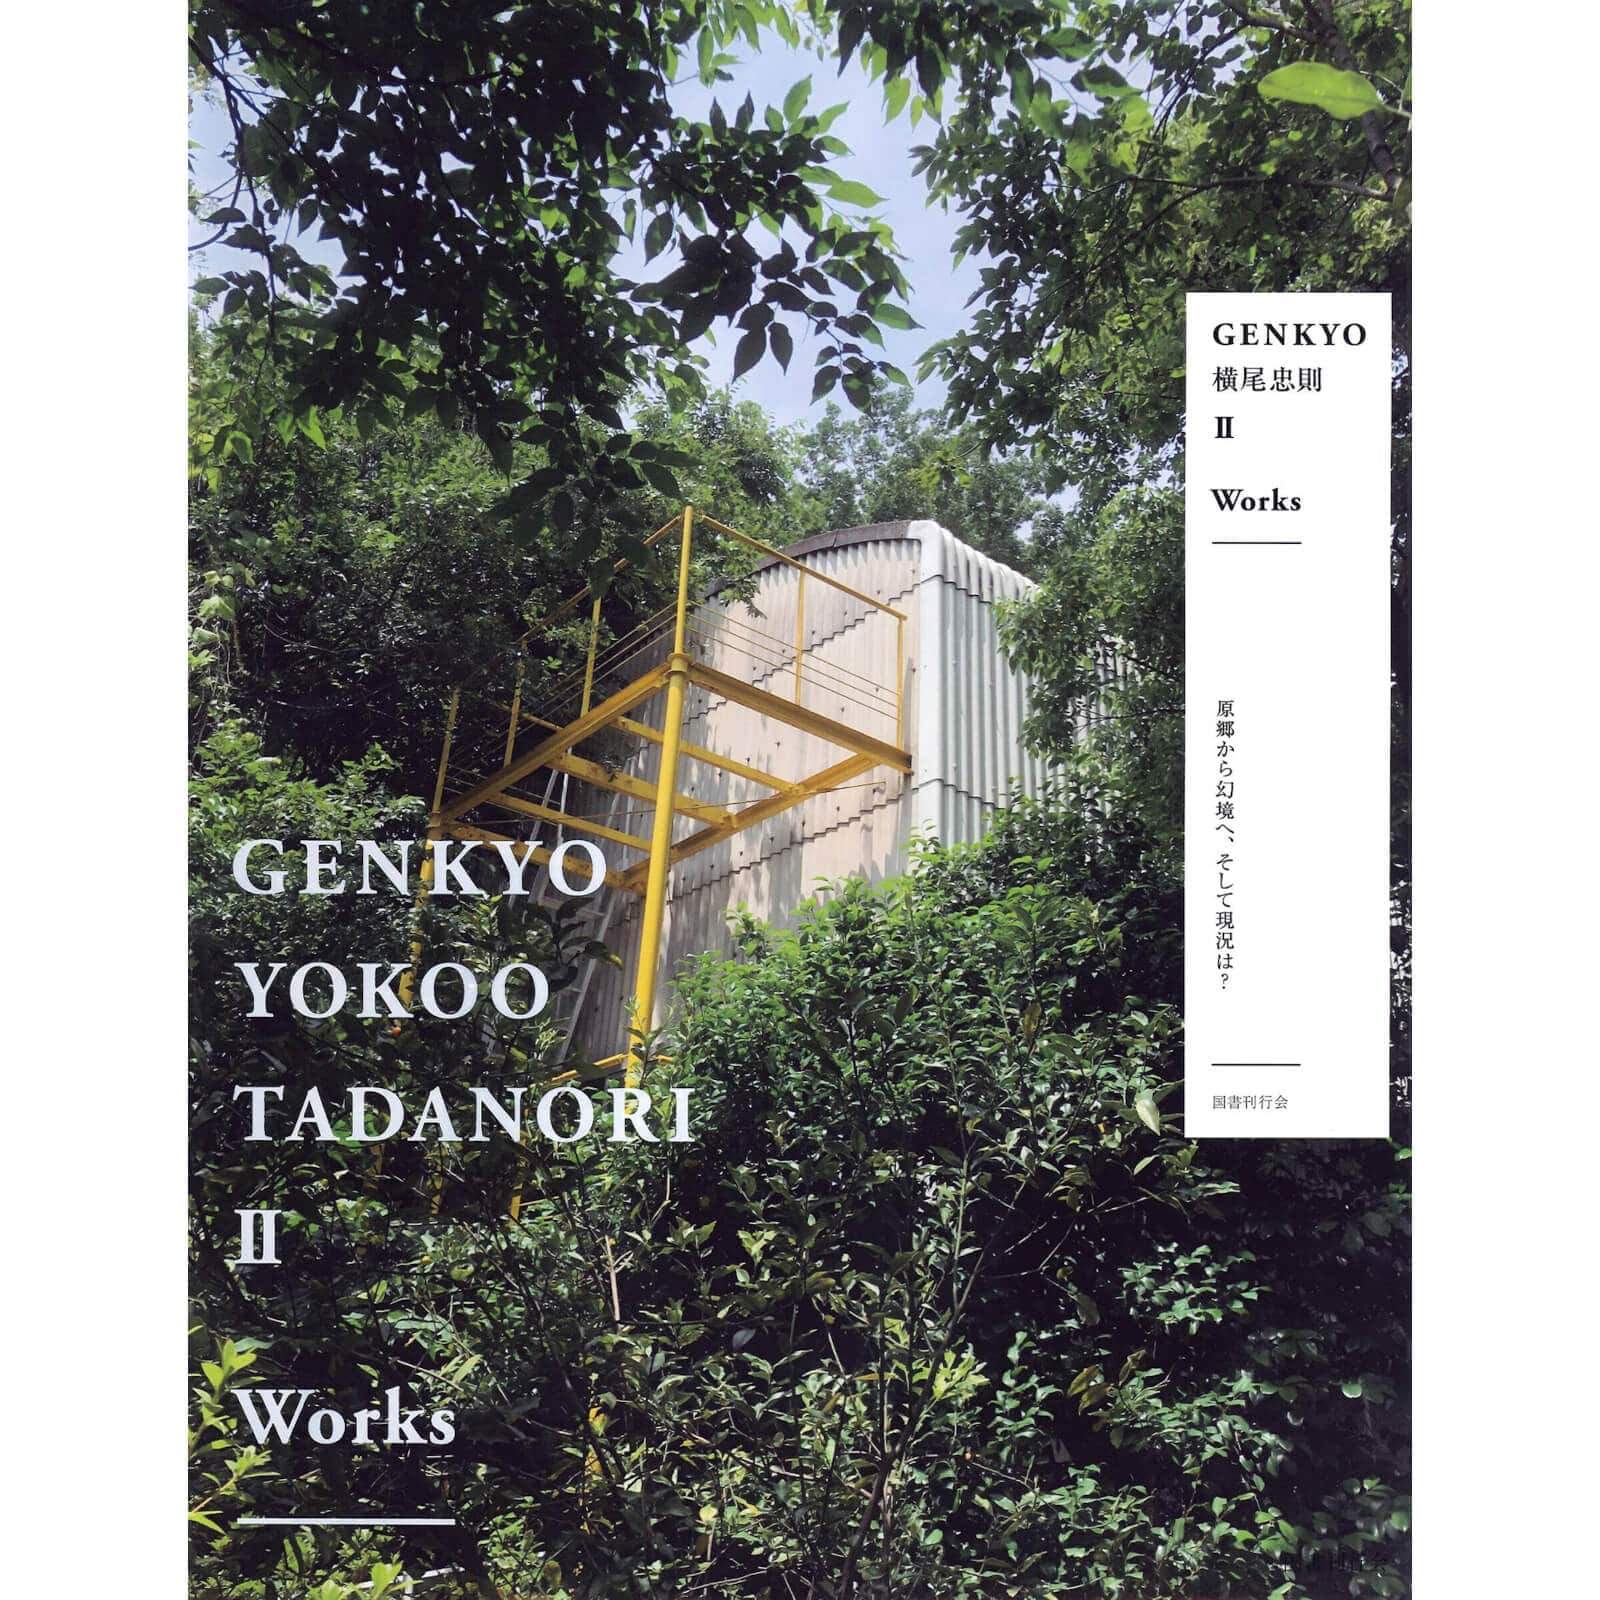 【販売終了】GENKYO 横尾忠則(公式カタログ)